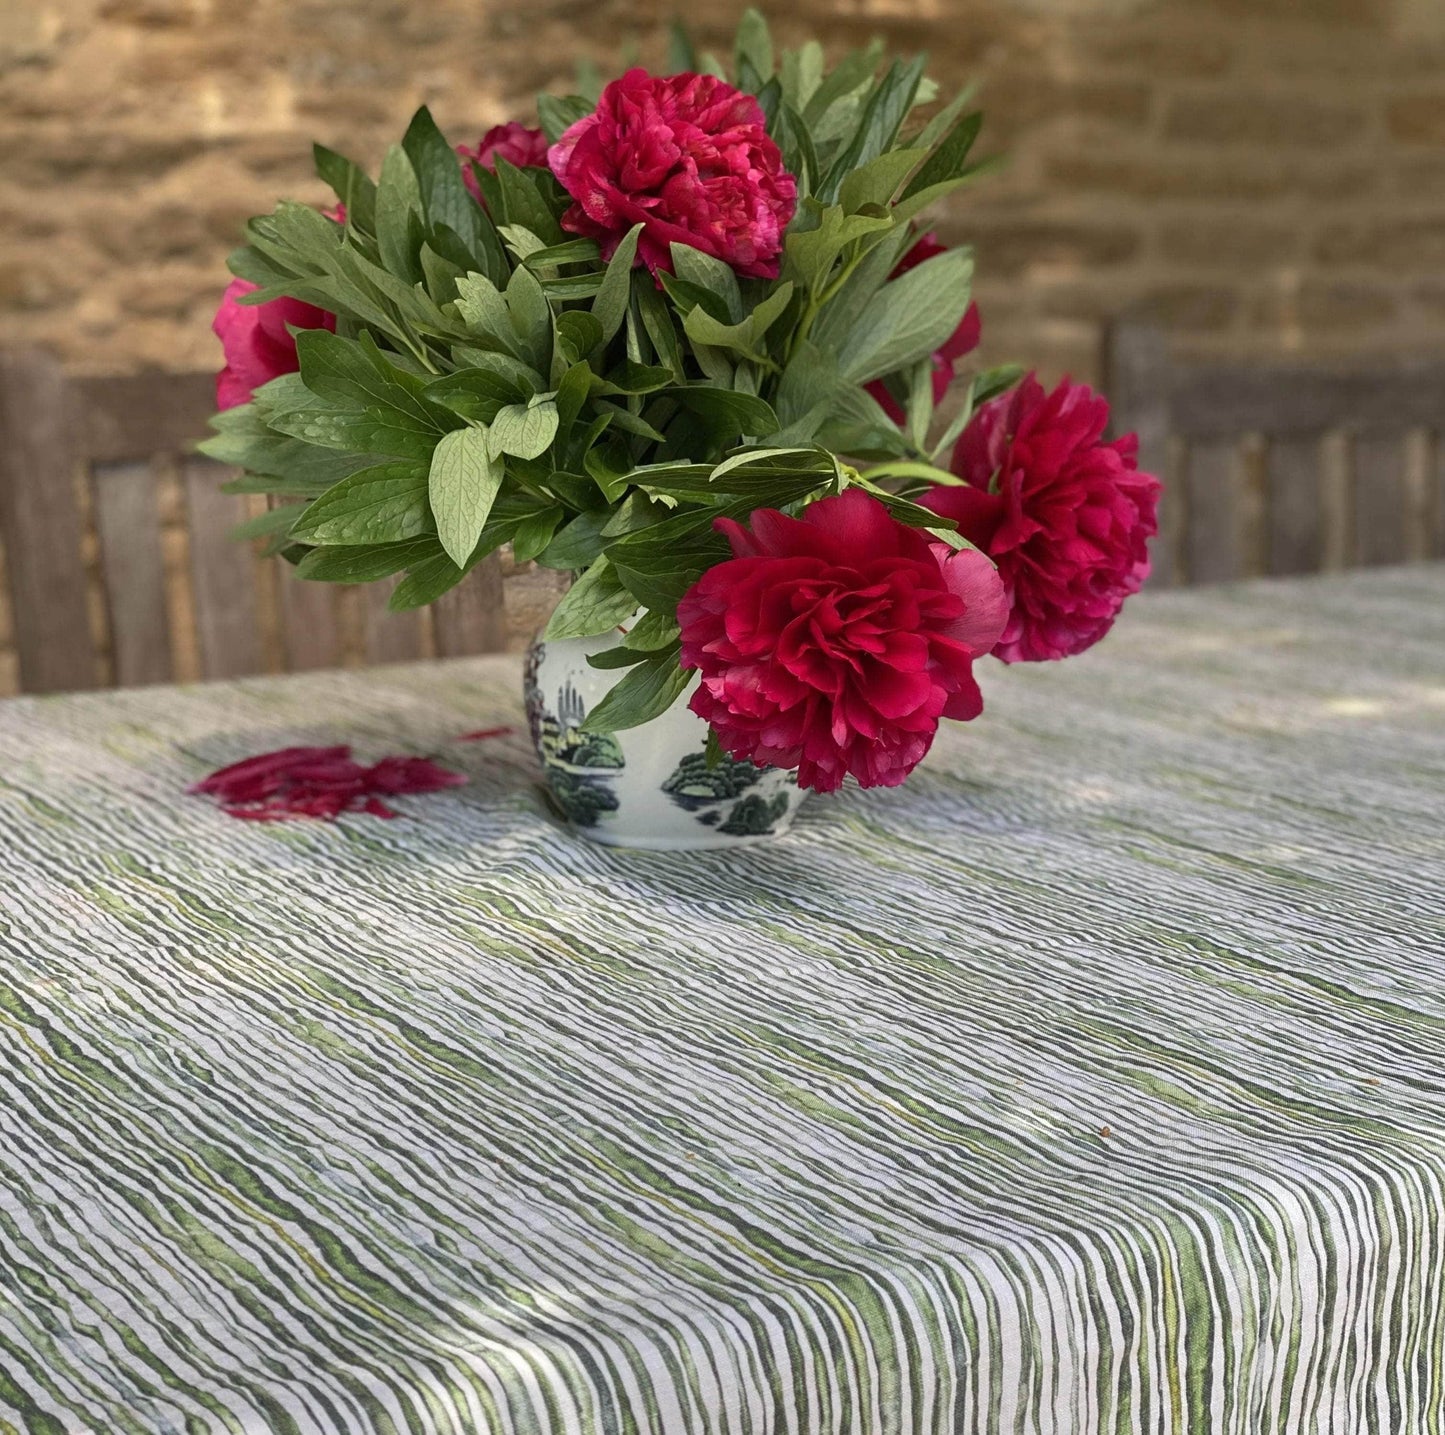 Green Stem Linen Tablecloth